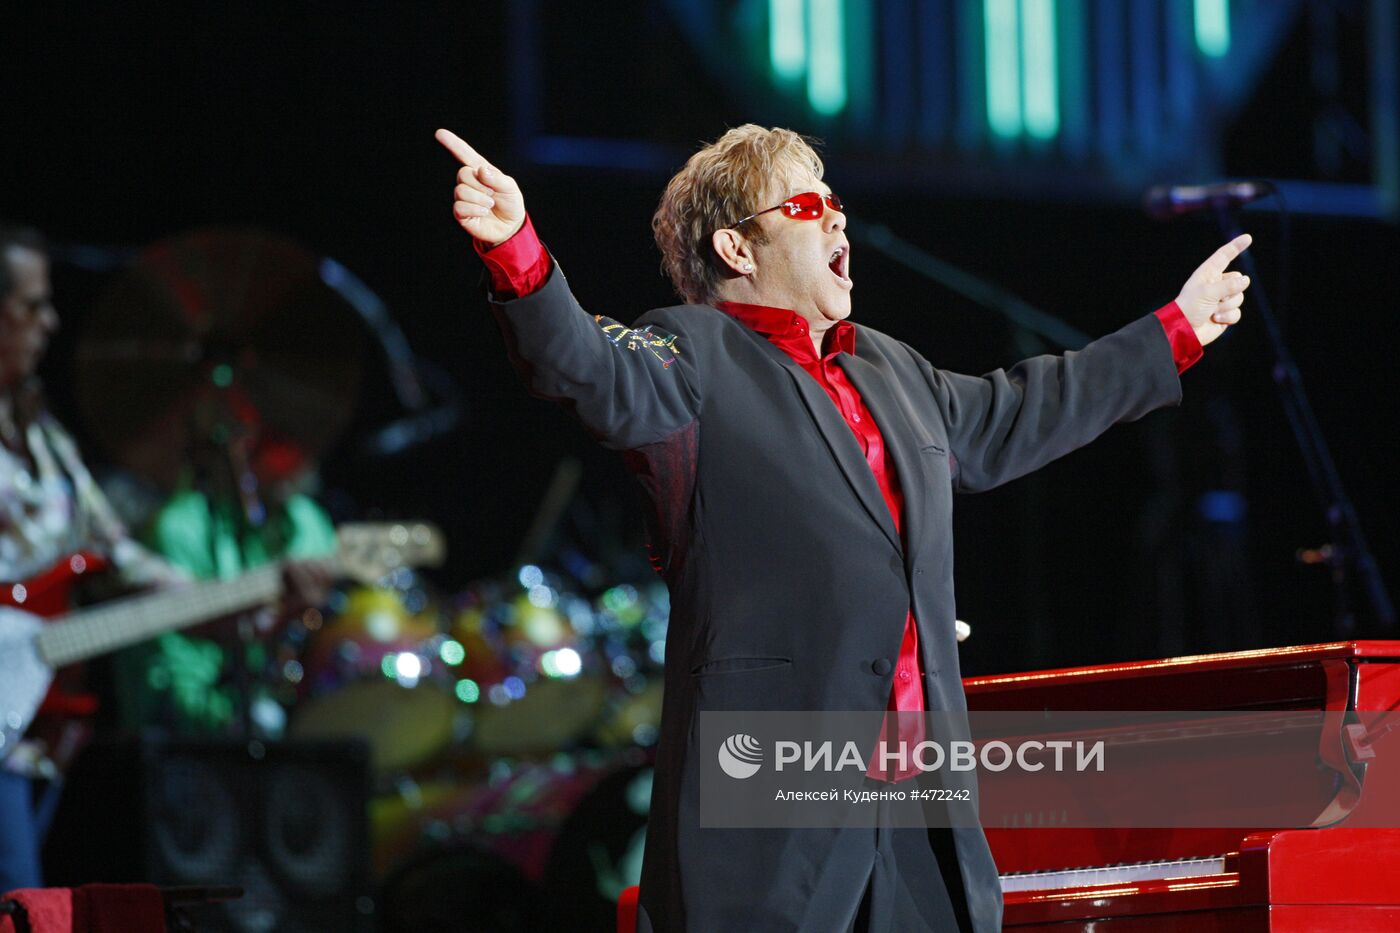 Концерт Элтона Джона в СК "Олимпийский" в Москве